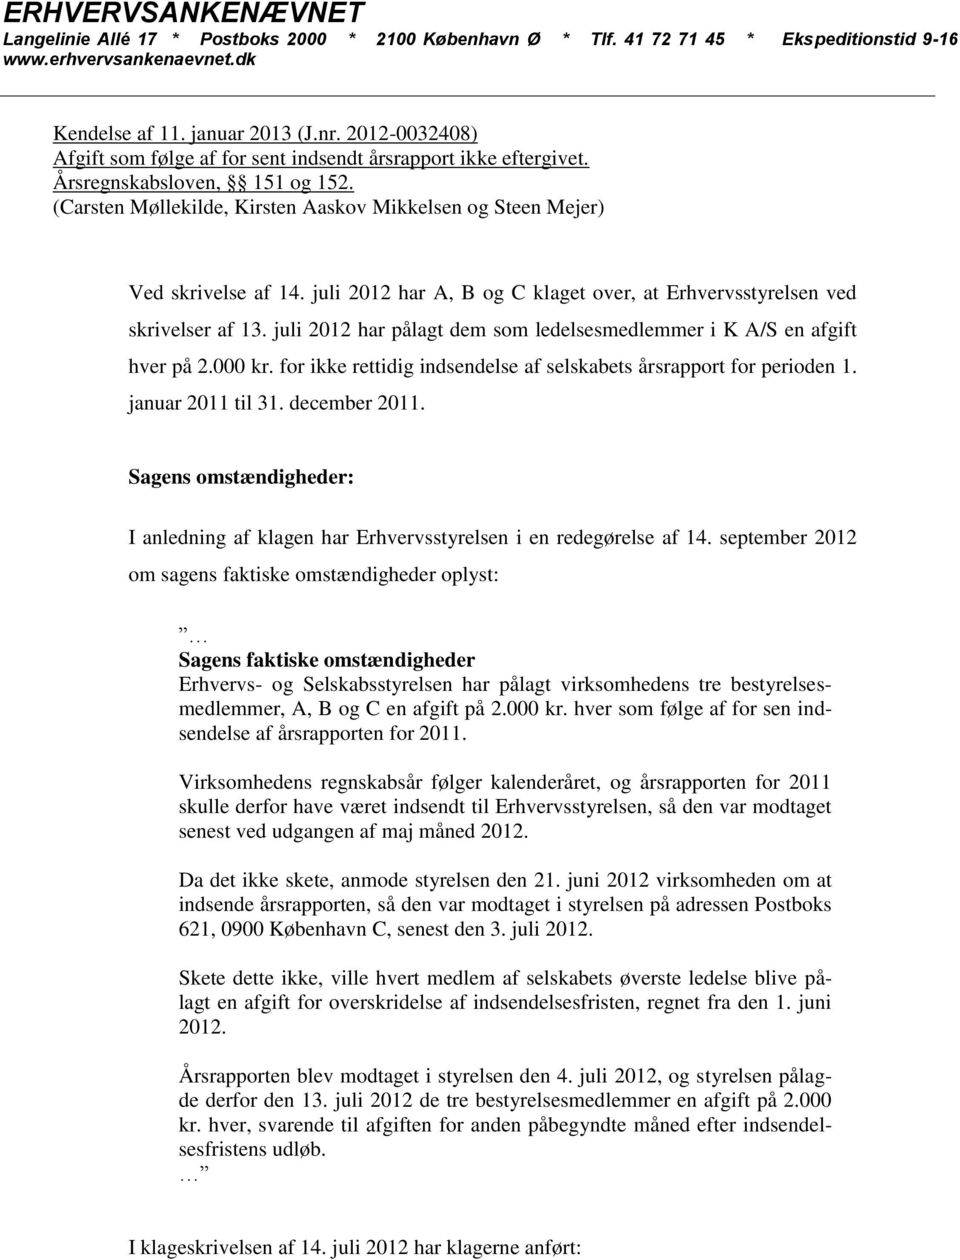 juli 2012 har A, B og C klaget over, at Erhvervsstyrelsen ved skrivelser af 13. juli 2012 har pålagt dem som ledelsesmedlemmer i K A/S en afgift hver på 2.000 kr.